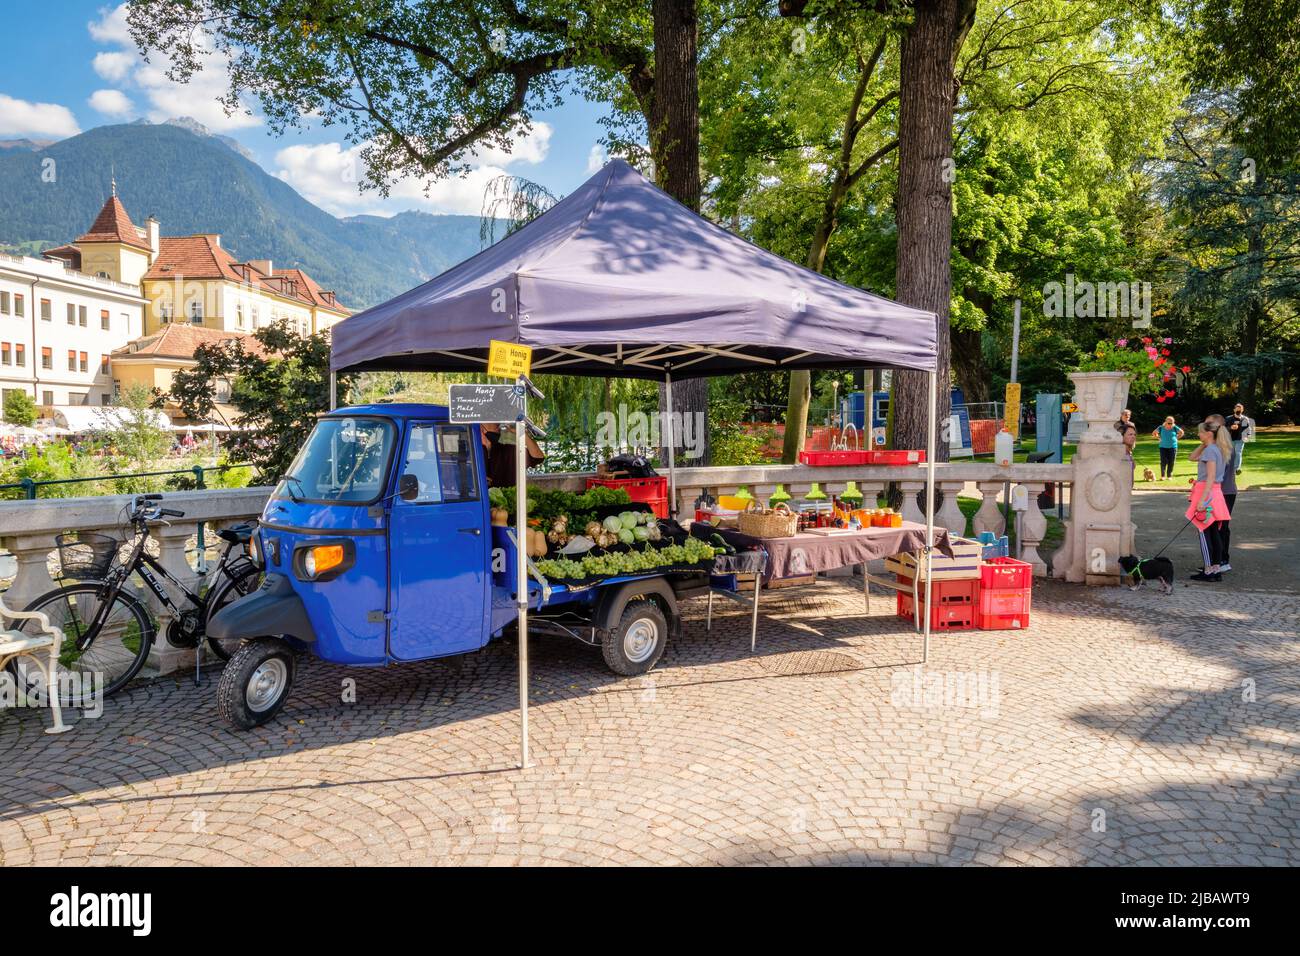 Merano, Italien - 27. September 2021: Am Eingang eines Stadtparks in der Stadt Merano (Südtirol) verkauft ein charmanter kleiner Imbissstand Waren. Stockfoto